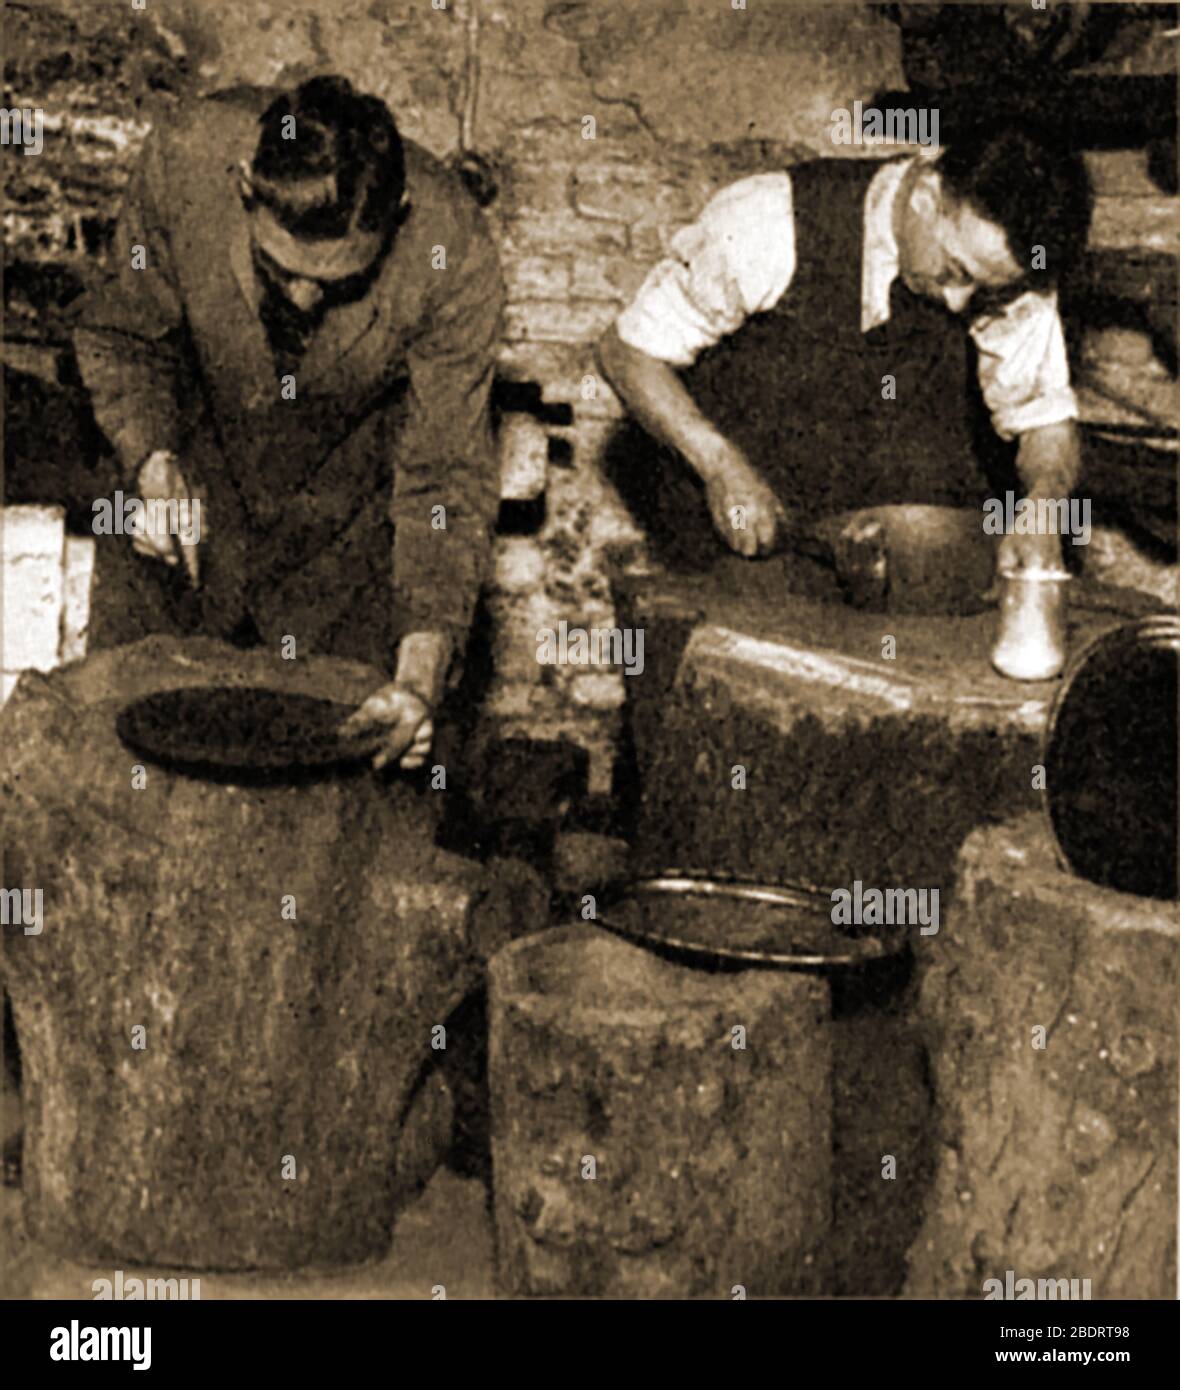 Una fotografia storica che mostra i lavoratori britannici peltro che battono le piastre in forma su tronchi di albero reali. Pewter è una delle più antiche industrie manifatturiere del Regno Unito in continua produzione. Il mestiere fu portato in Gran Bretagna dai Romani nel secondo secolo d.C. e fu introdotto a Sheffield nel 1769 da James Vickers che concepì una lega che potesse imitare il piatto d'argento. Negli anni '40 l'industria dei peltro impiegava centinaia di persone locali e. Foto Stock